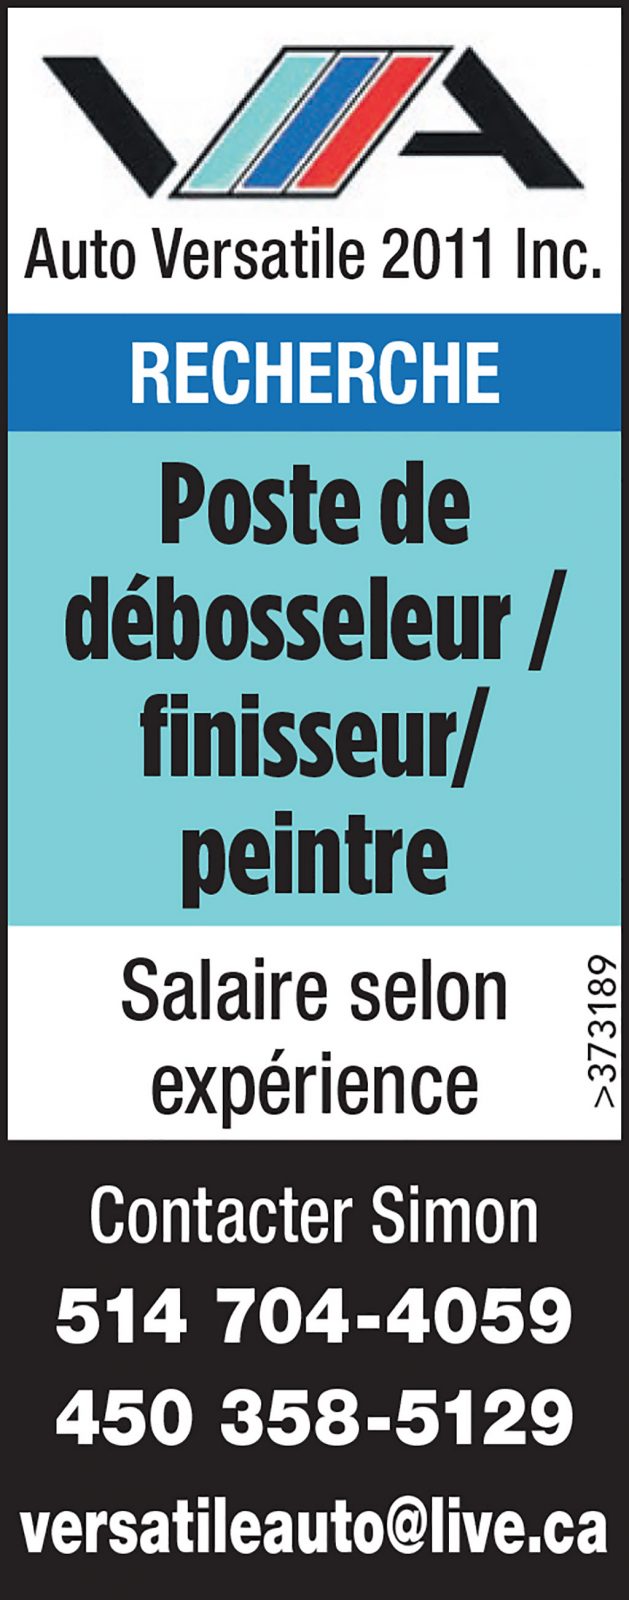 Logo de Poste de débosseleur / finisseur/ peintre